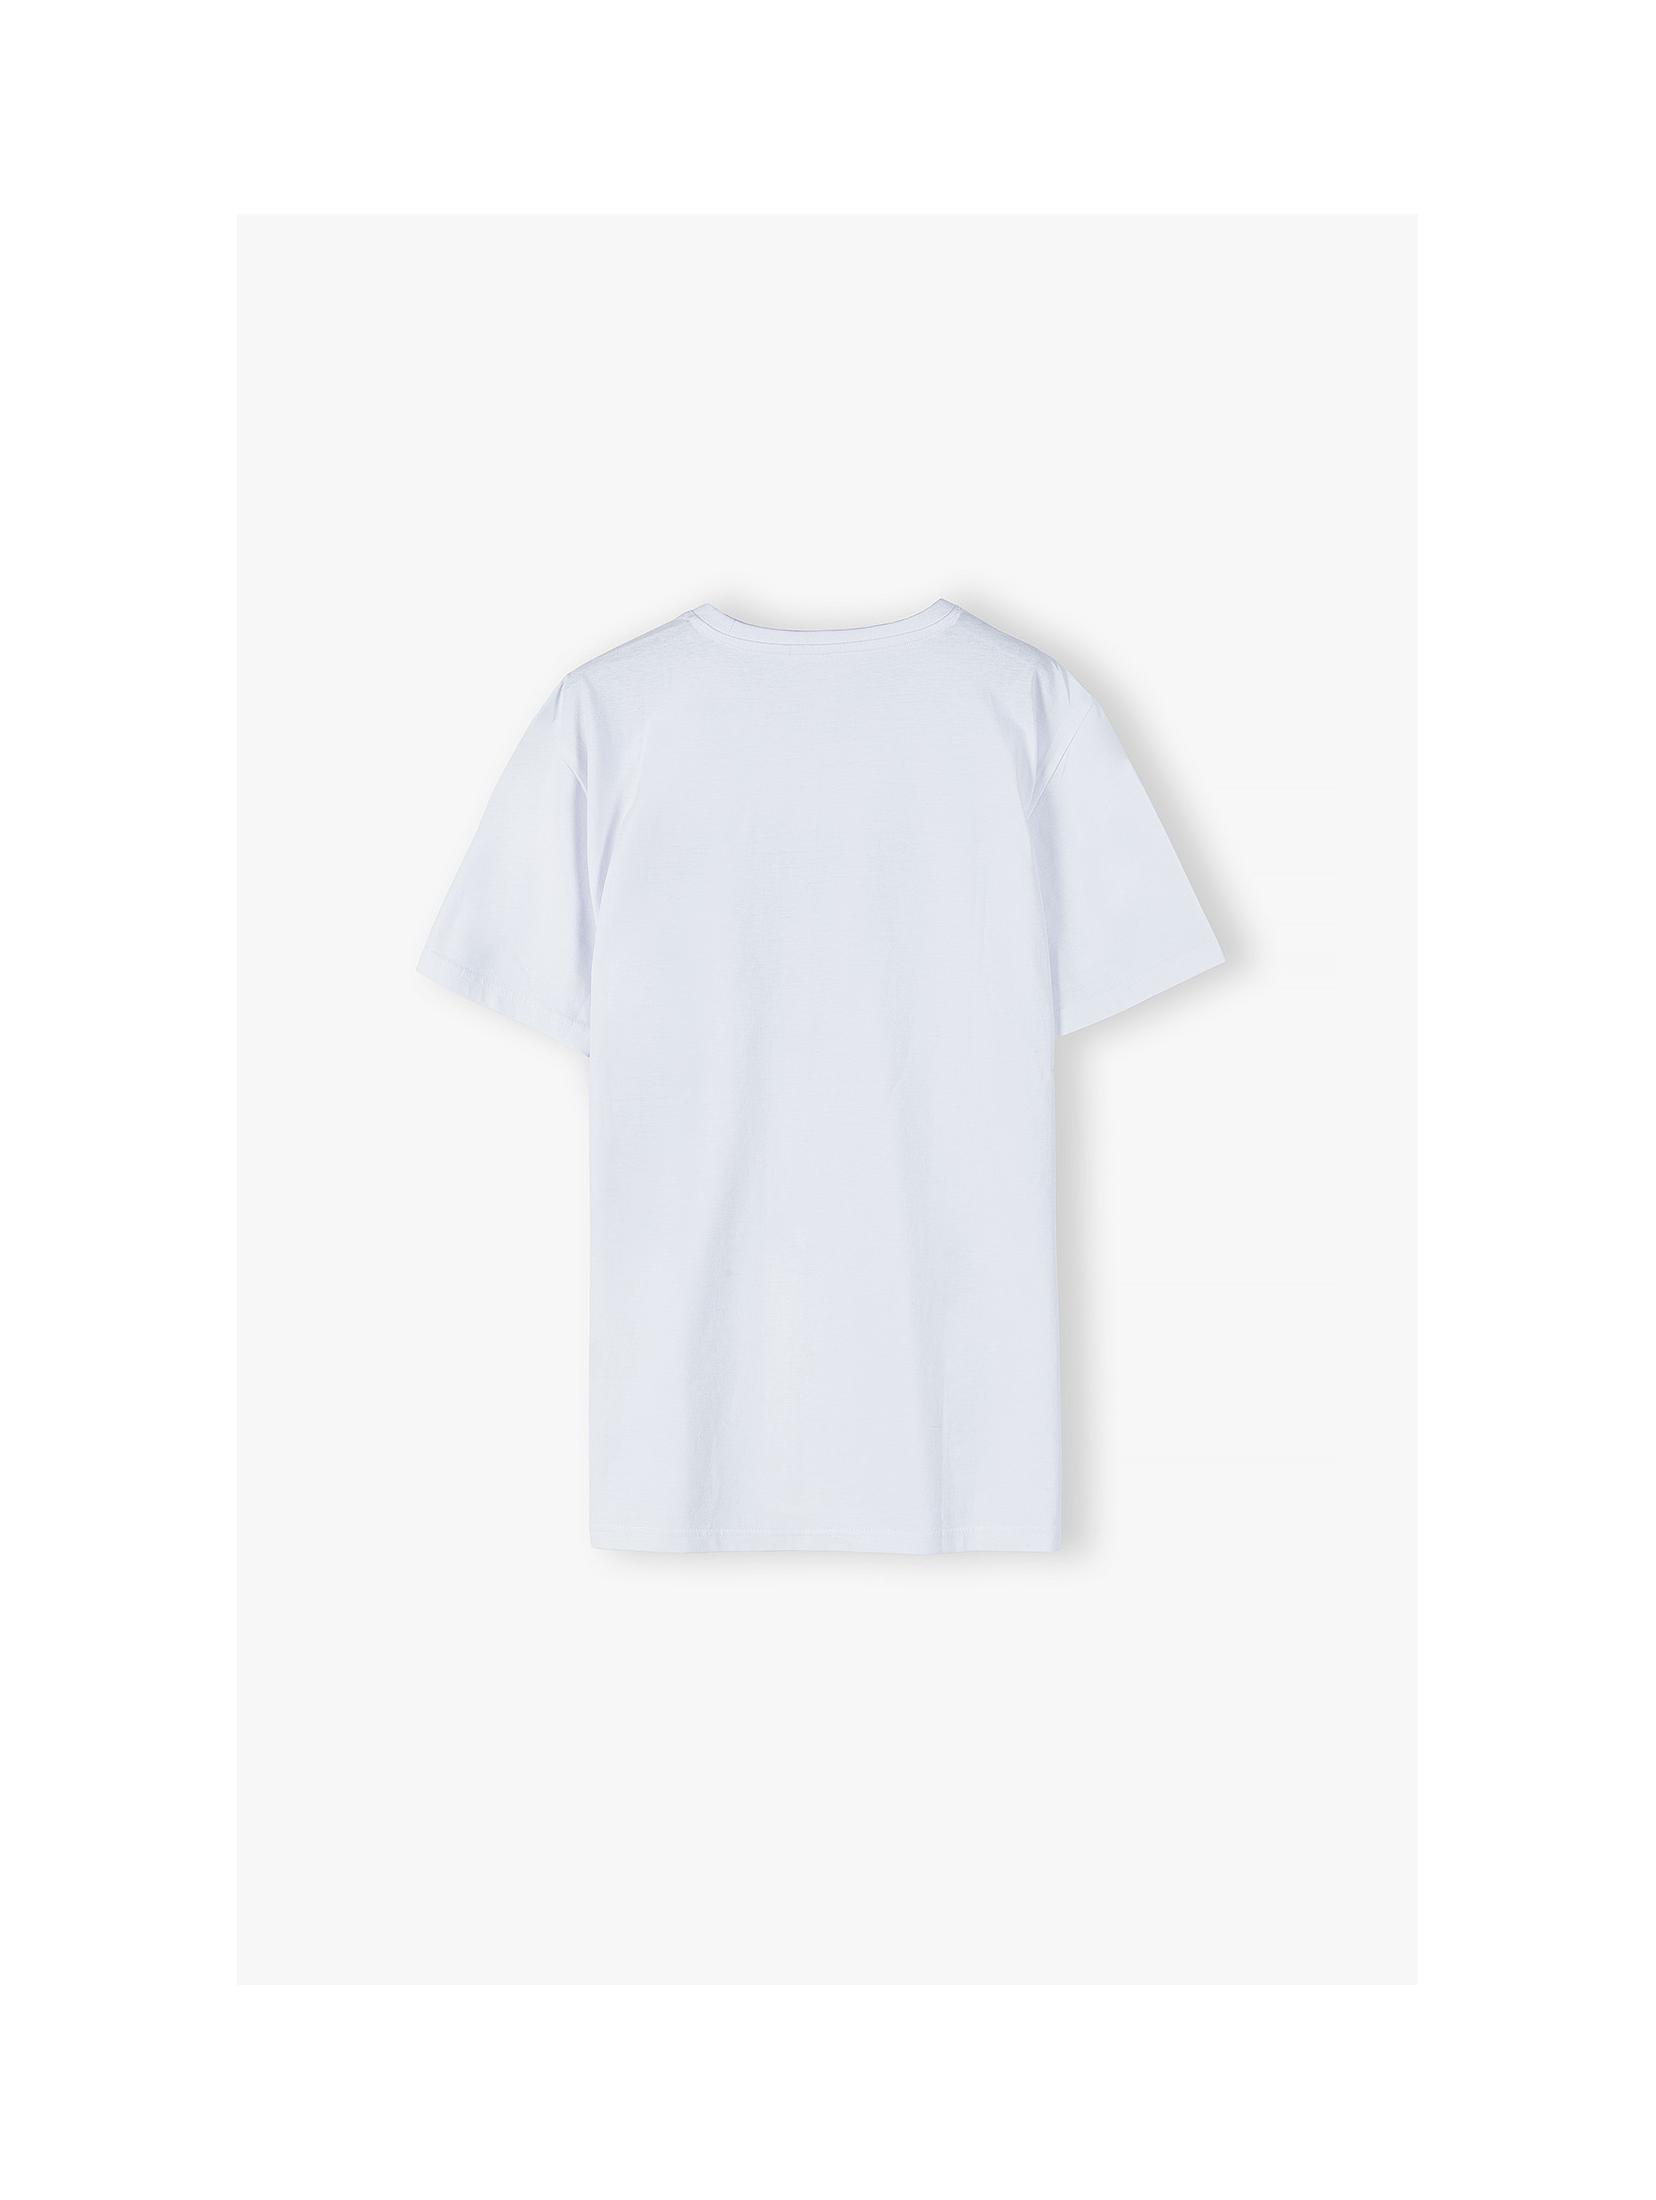 Bawełniany biały t-shirt męski - krótki rękaw Summer Paker- ubrania dla całej rodziny